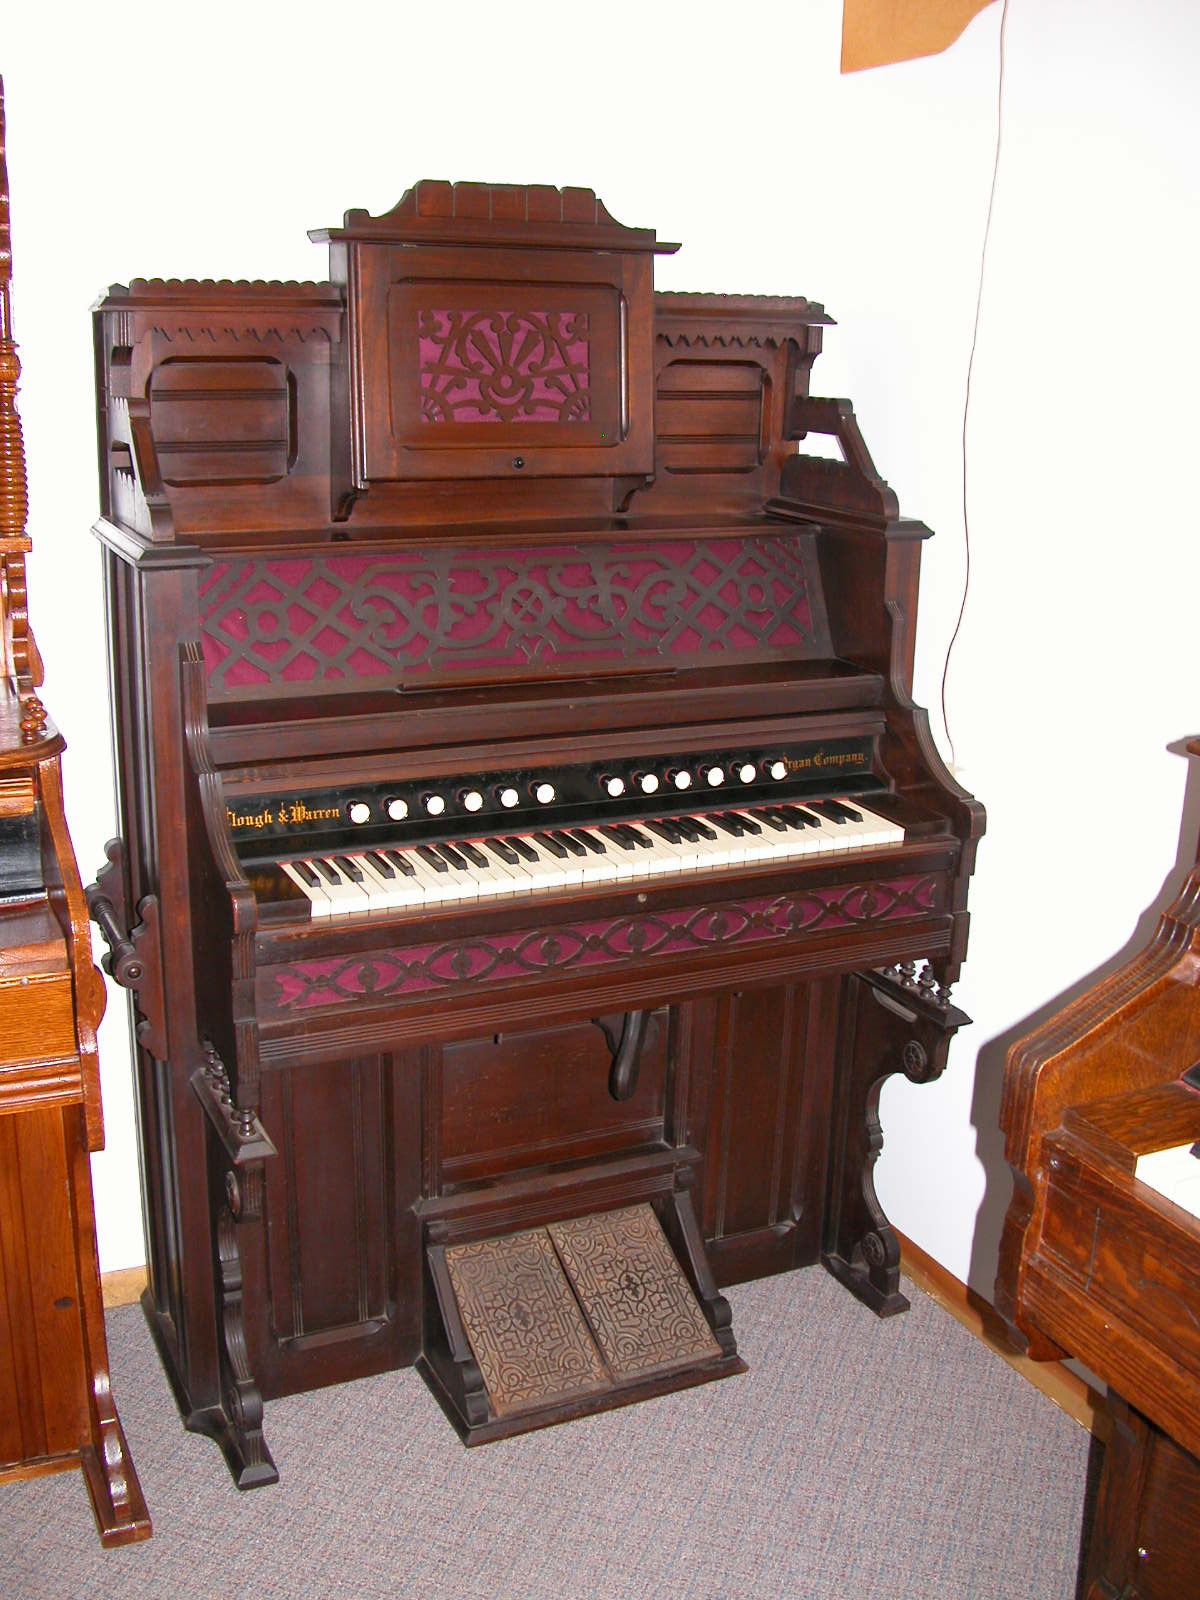 1869 Clough & Warren Organ Co. I.D. No. #22